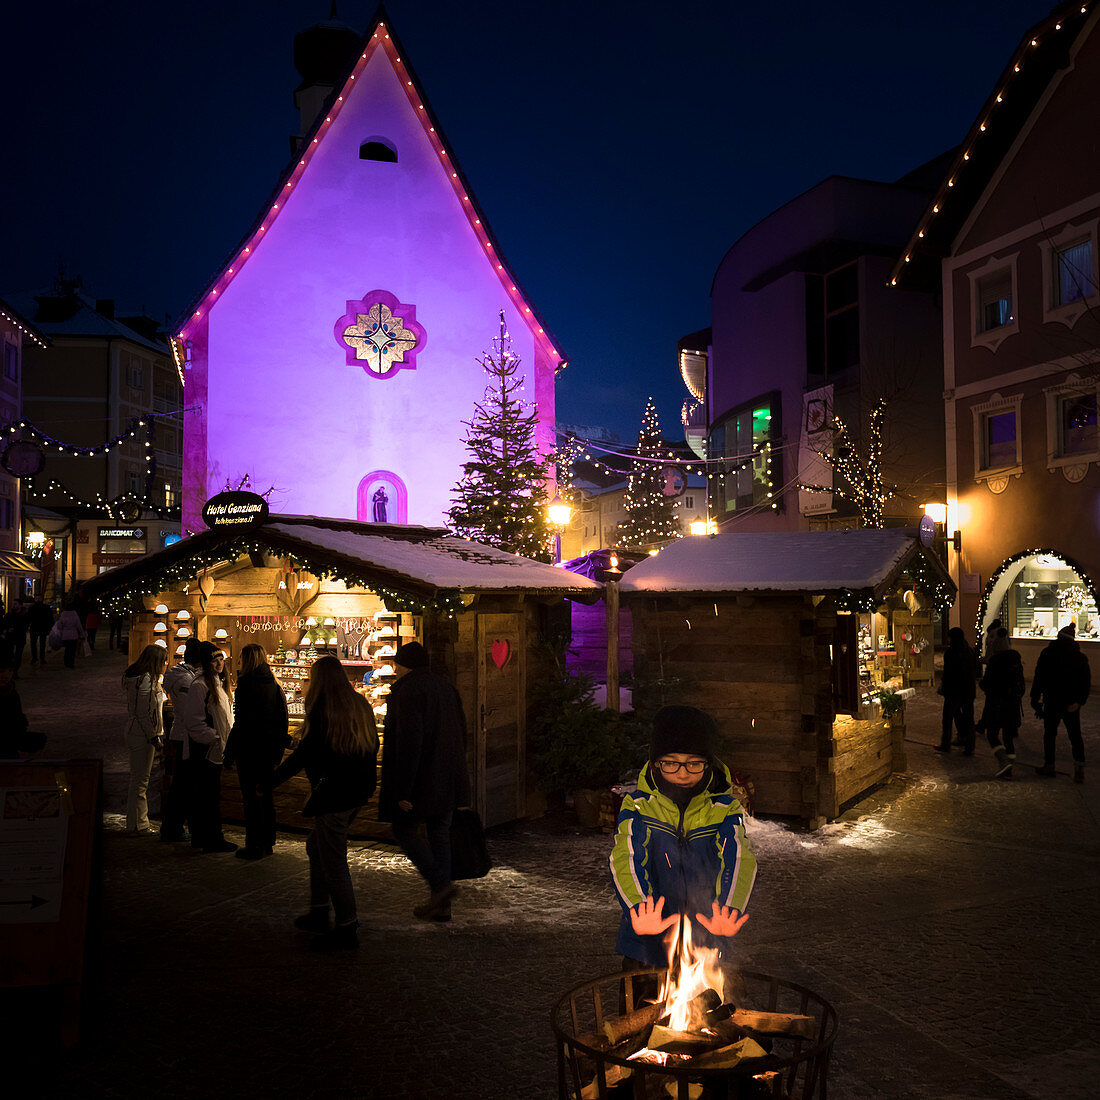 Kind am Lagerfeuer, Weihnachtsmarkt in Gröden, Bozen, Südtirol, Trentino-Südtirol, Italien